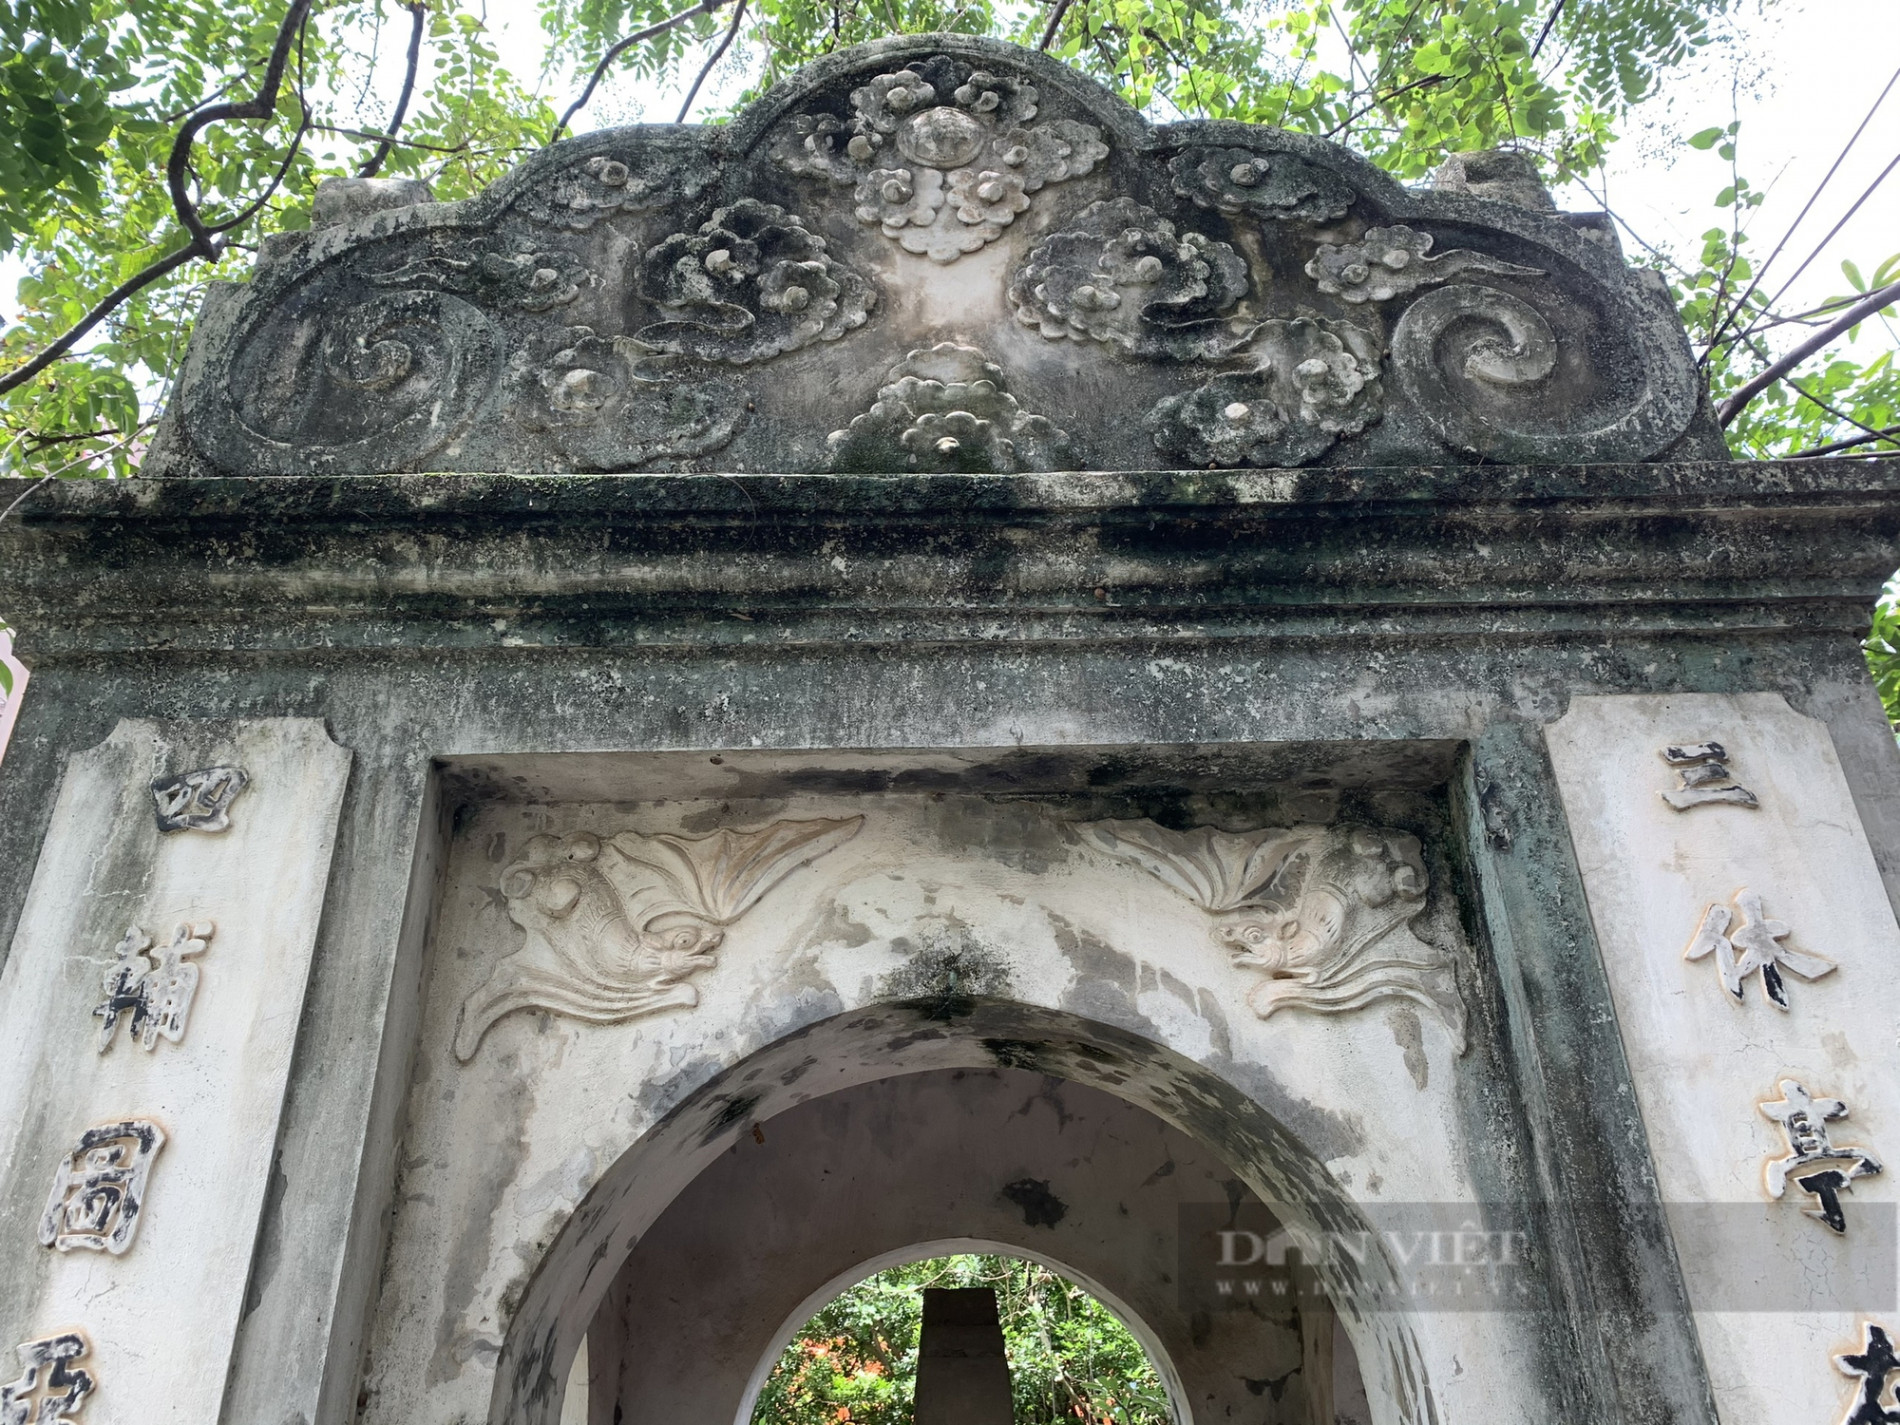 Kiến trúc độc đáo bên trong khu lăng mộ cổ trăm năm tuổi ở giữa lòng Thủ đô - Ảnh 11.